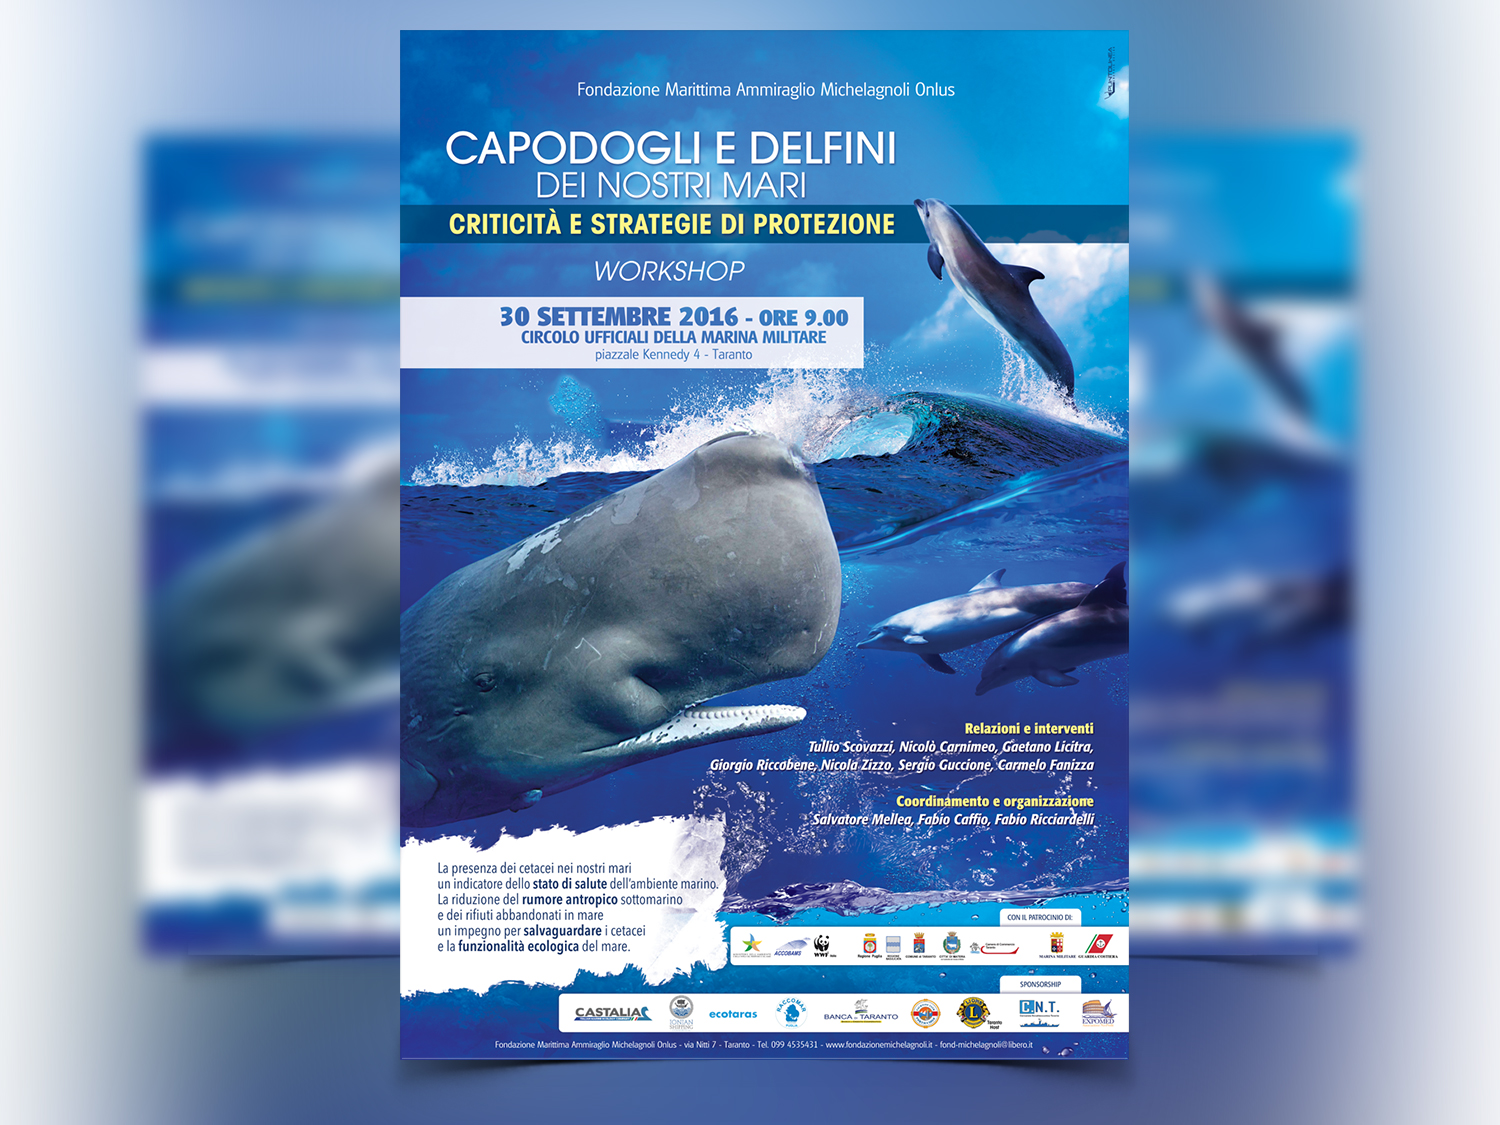 Workshop: capodogli e delfini dei nostri mari - criticità e strategie di protezione